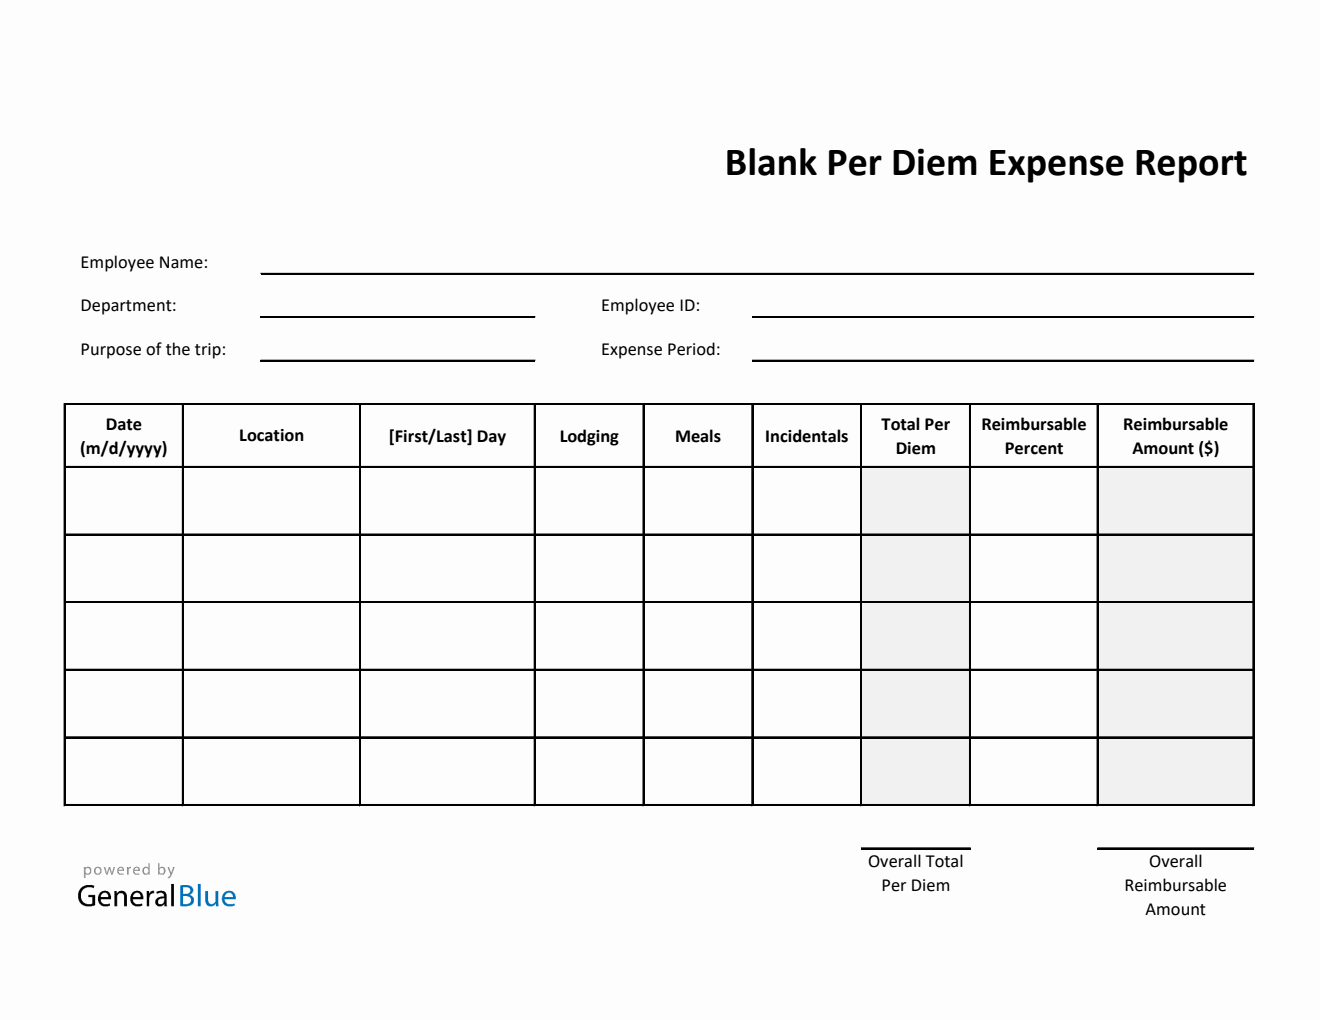 Blank Per Diem Expense Report Template in Excel (Printable)